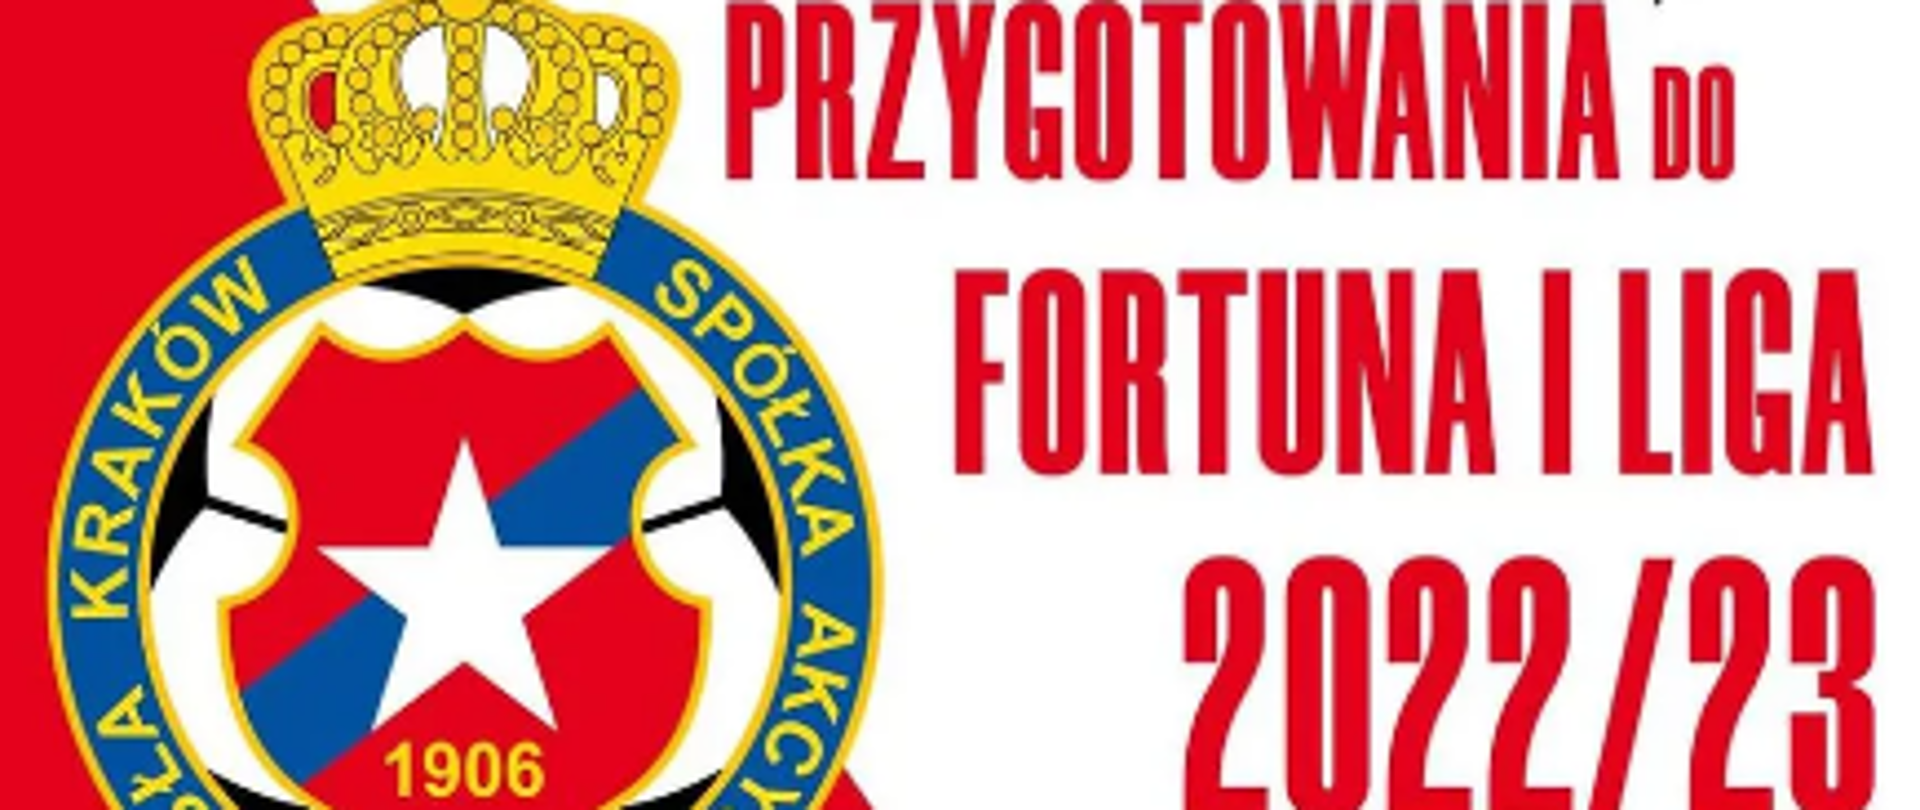 Plakat - na białym tle czerwonymi literami napis - Przygotowania do Fortuna I Liga 2022/23 po lewej herb Wisły Kraków 